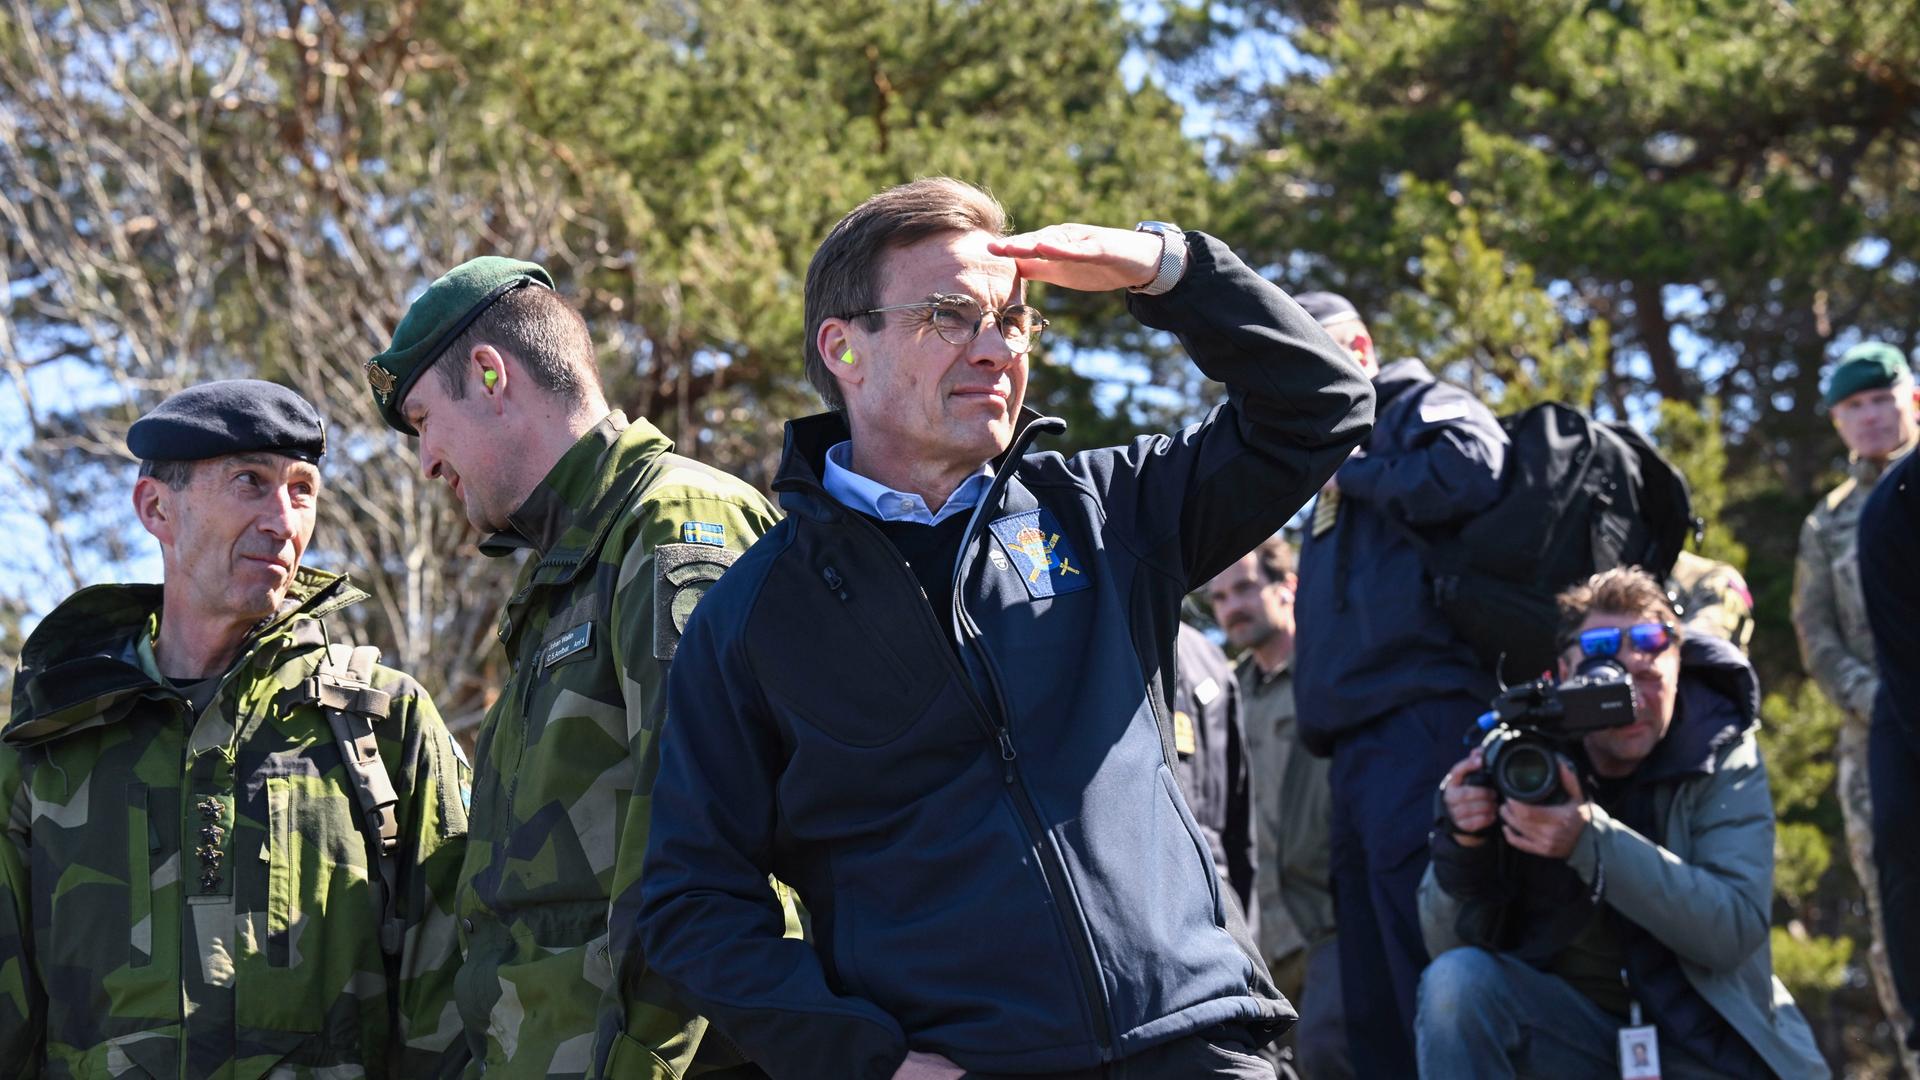 Ministerpräsident Ulf Kristersson (M) besucht  die Militärübung Aurora 23, bei der schwedische Amphibiensoldaten zusammen mit der Königlichen Marine in Korsö im Stockholmer Schärengarten Angriffe üben.